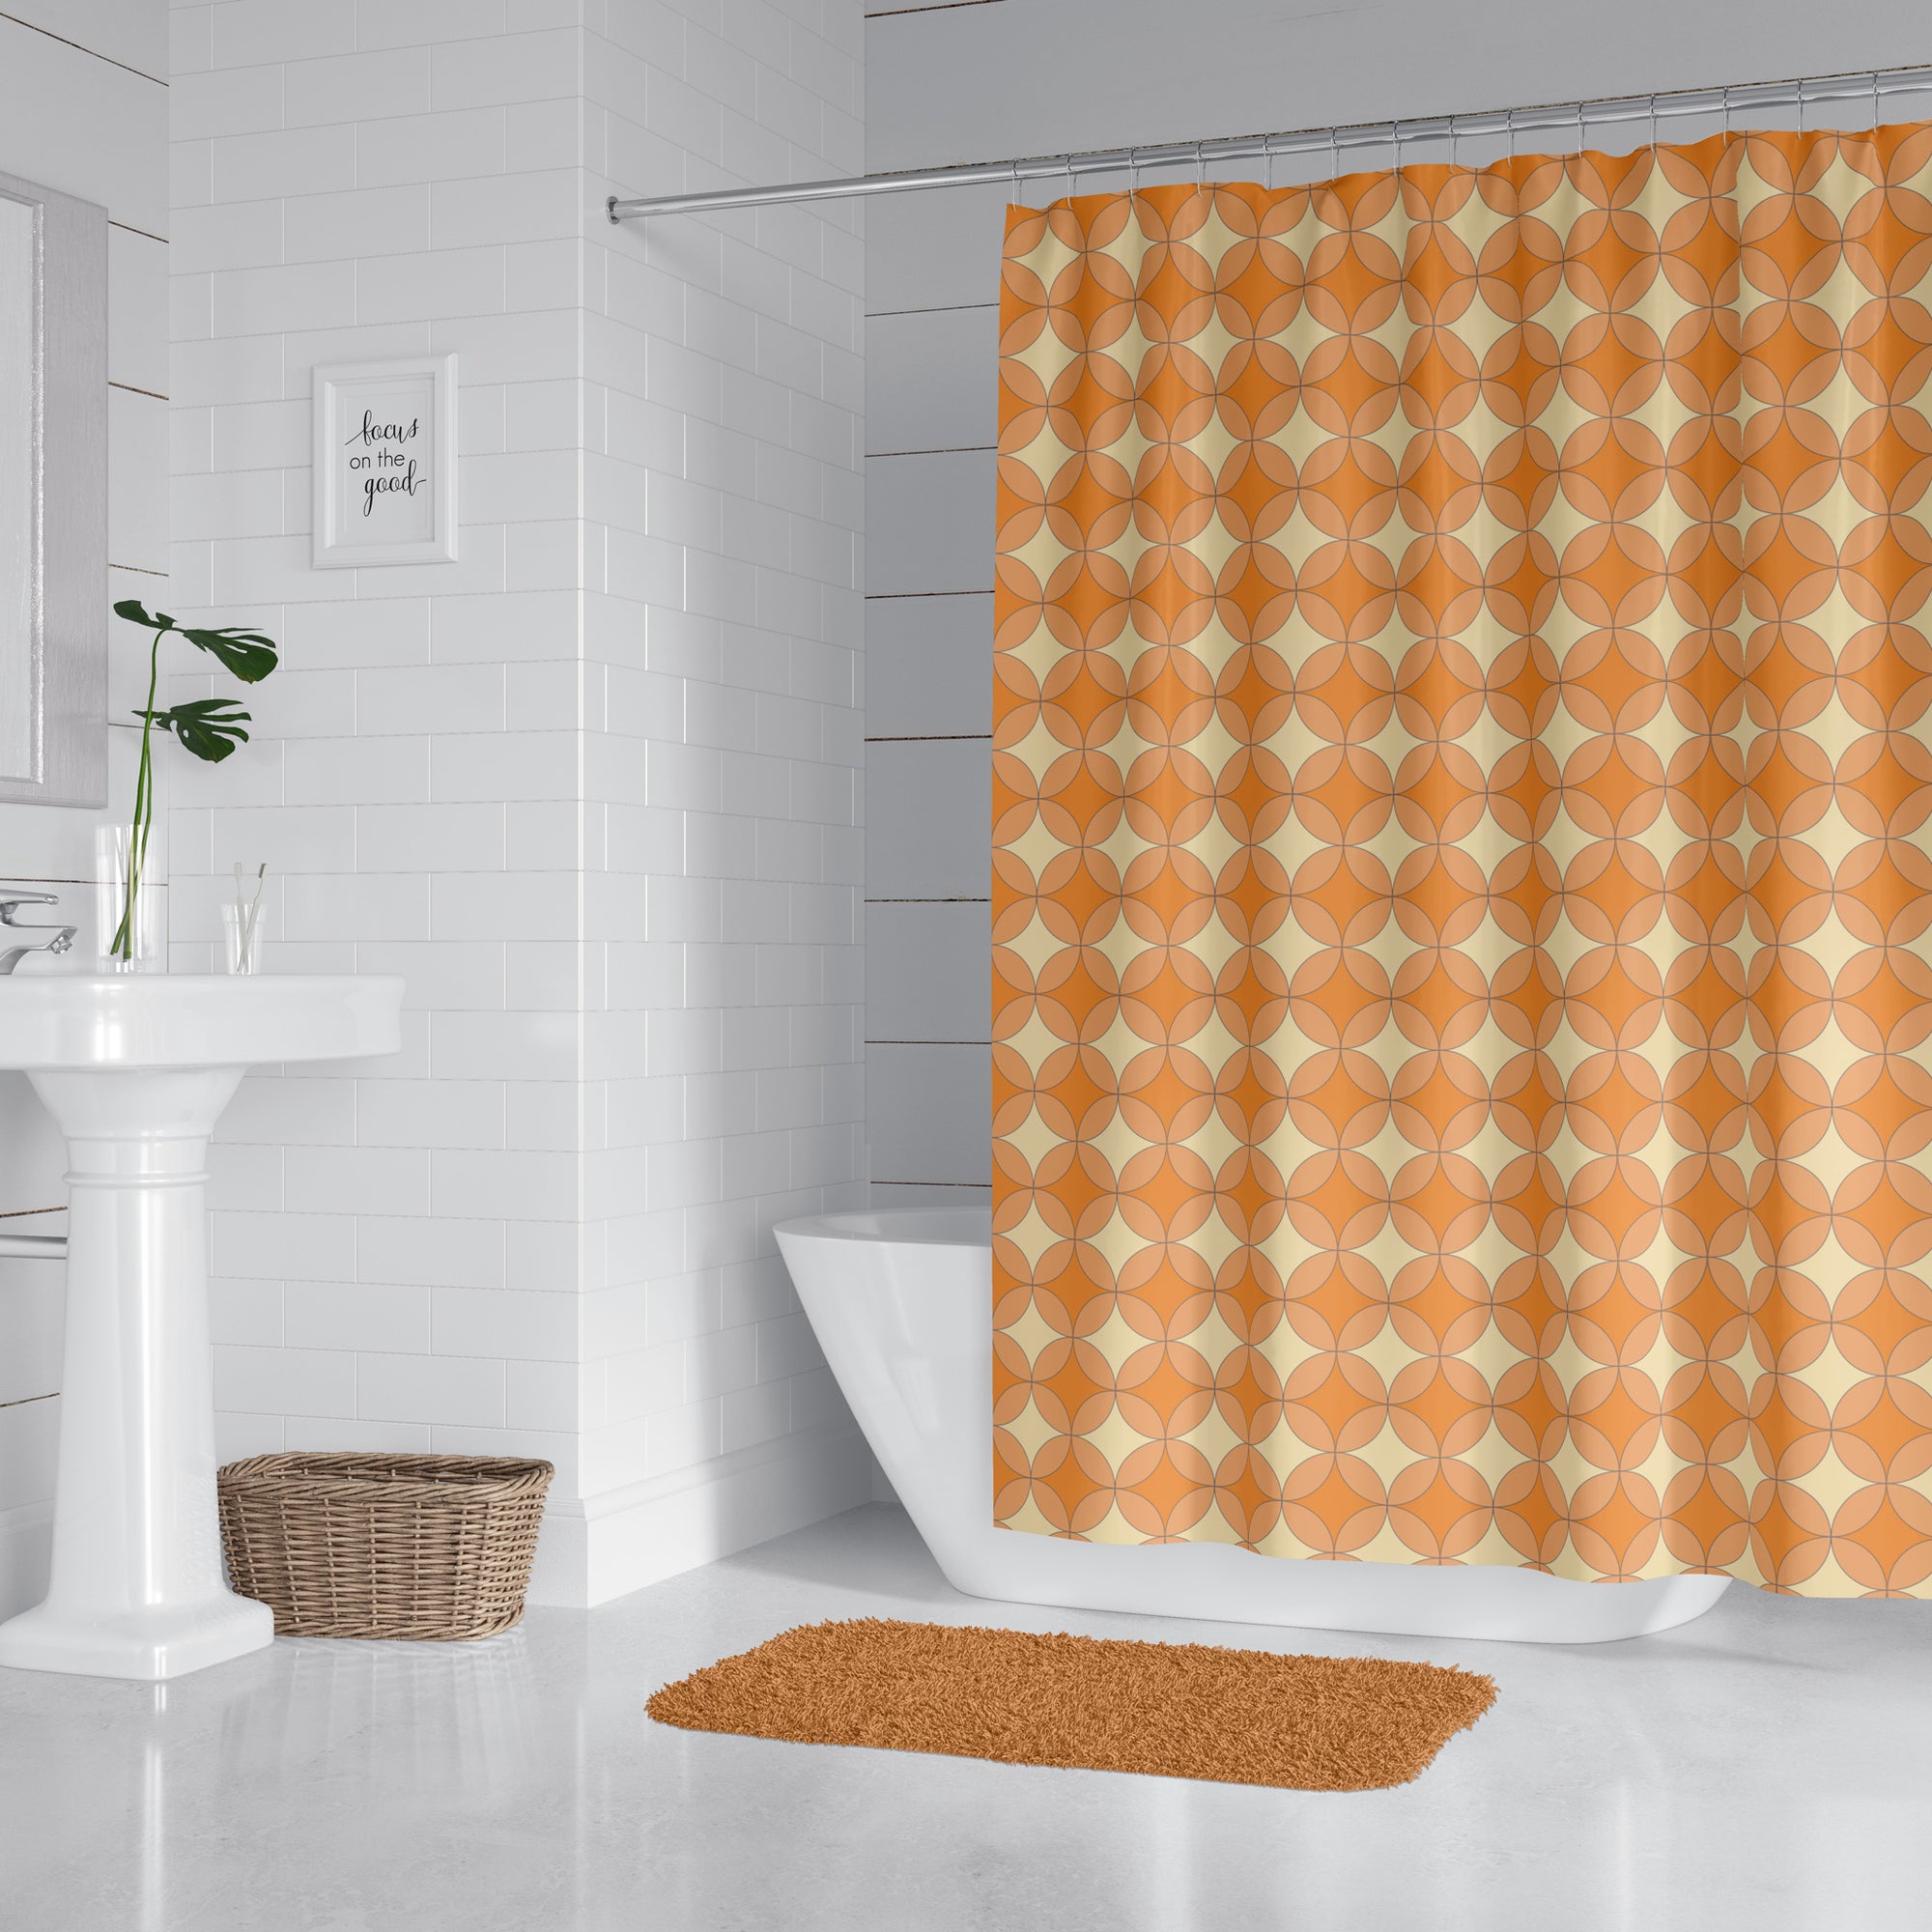 Orange and yellow diamond shower curtain